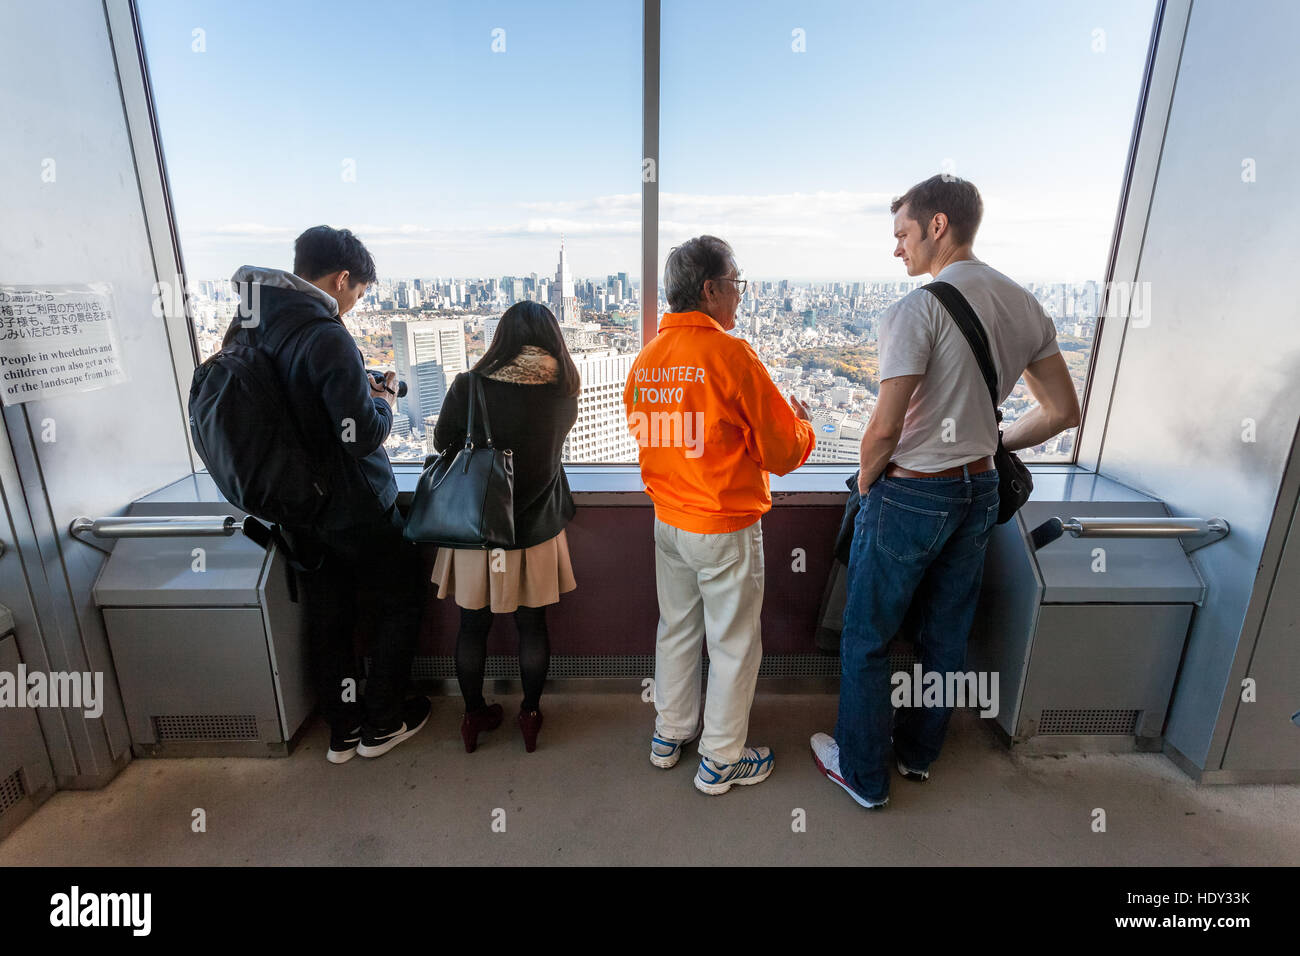 Una guida turistica volontaria (in giacca arancione) guida un turista maschile bianco intorno al ponte di osservazione al 45th° piano della torre TMG. Shinjuku, Tokyo, Giappone Foto Stock